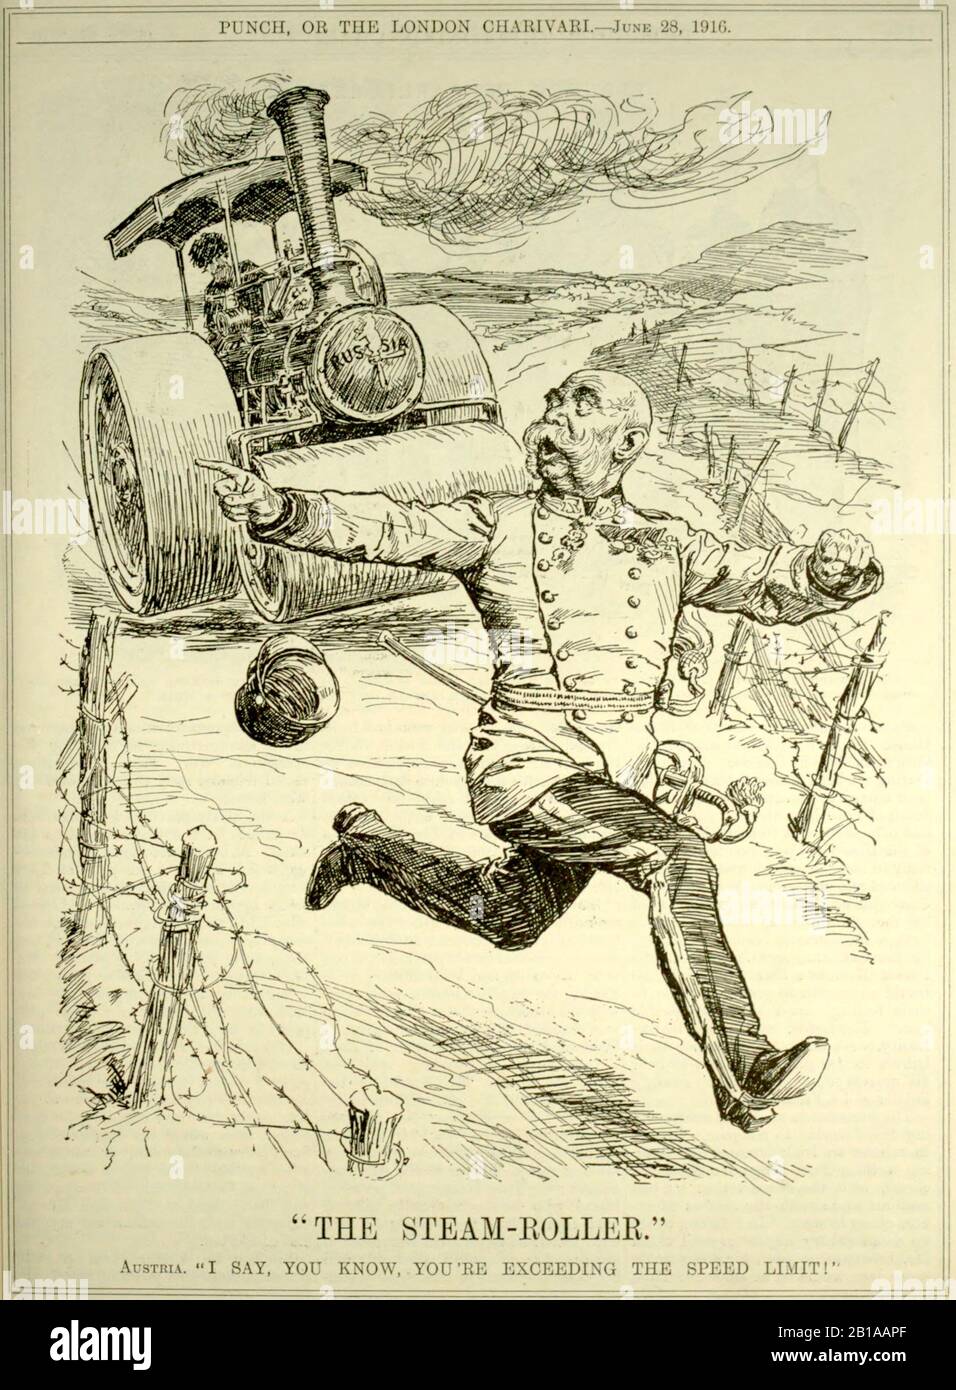 The Steam-Roller. Punch 1916. Artist Bernard Partridge 1861-1945. Stock Photo